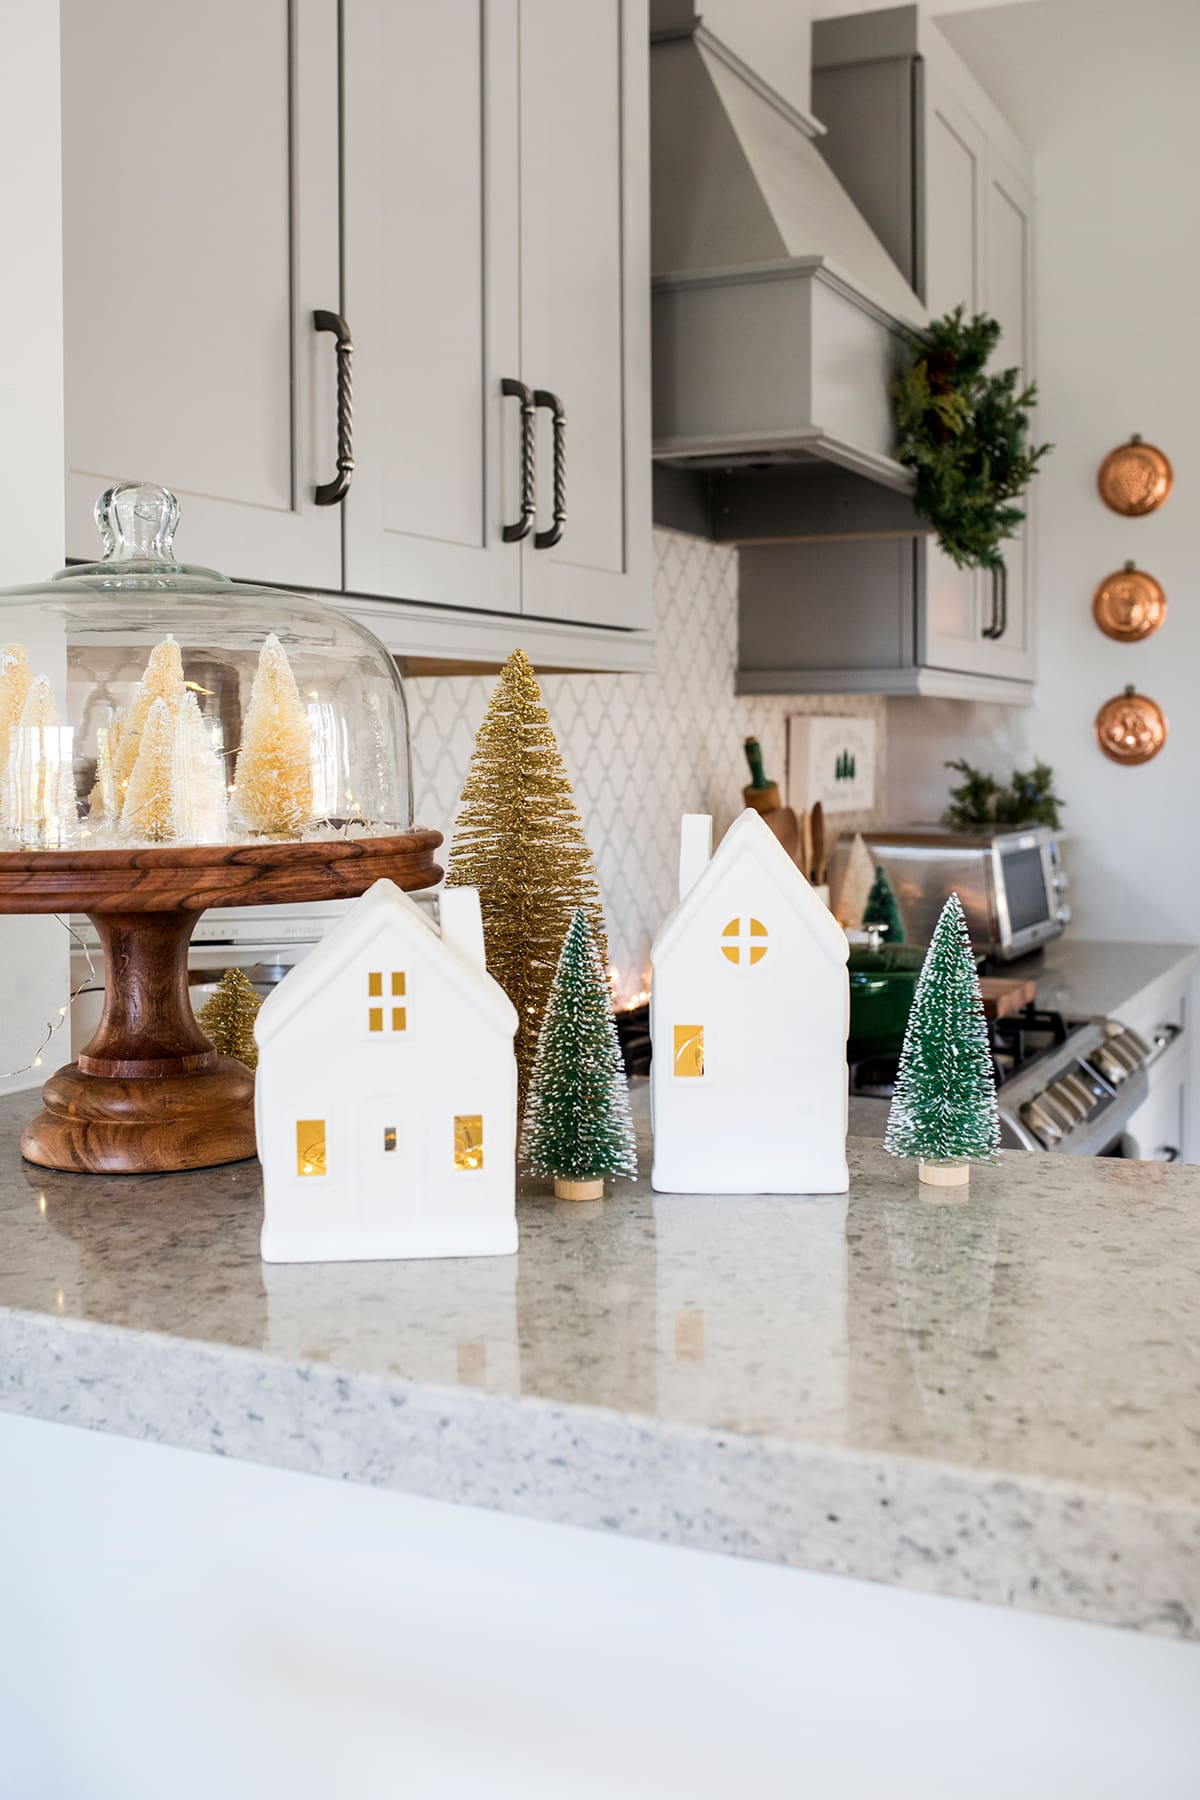 Our Pine Tree Inspired Christmas Kitchen Decor • Freutcake